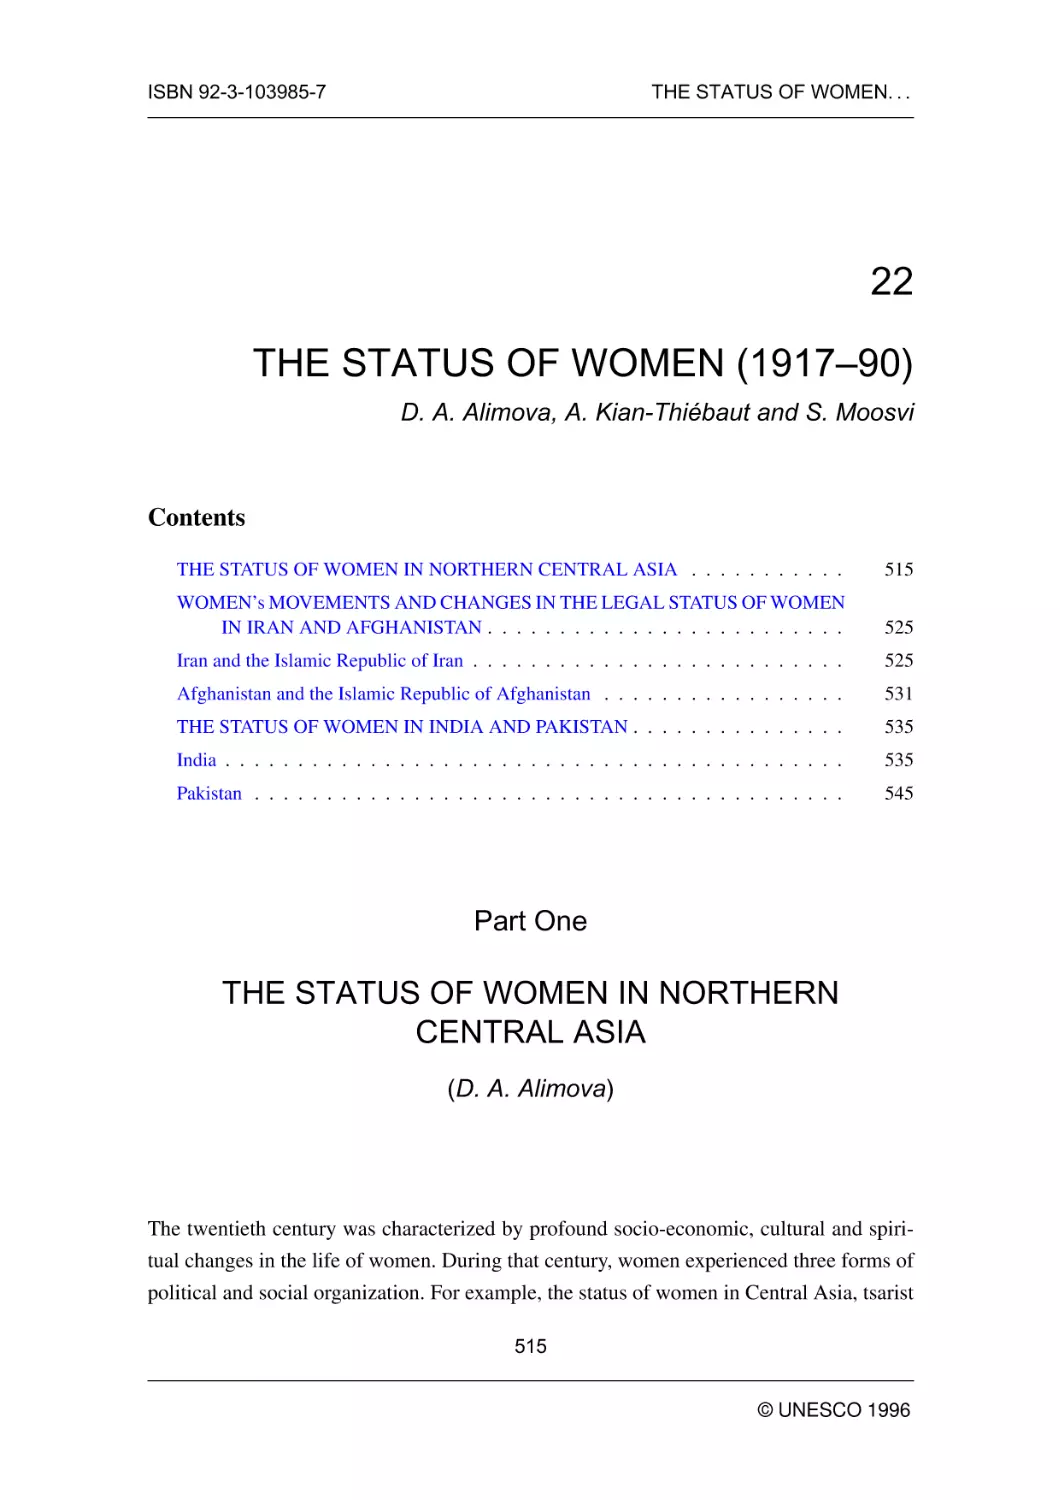 THE STATUS OF WOMEN (1917--90)